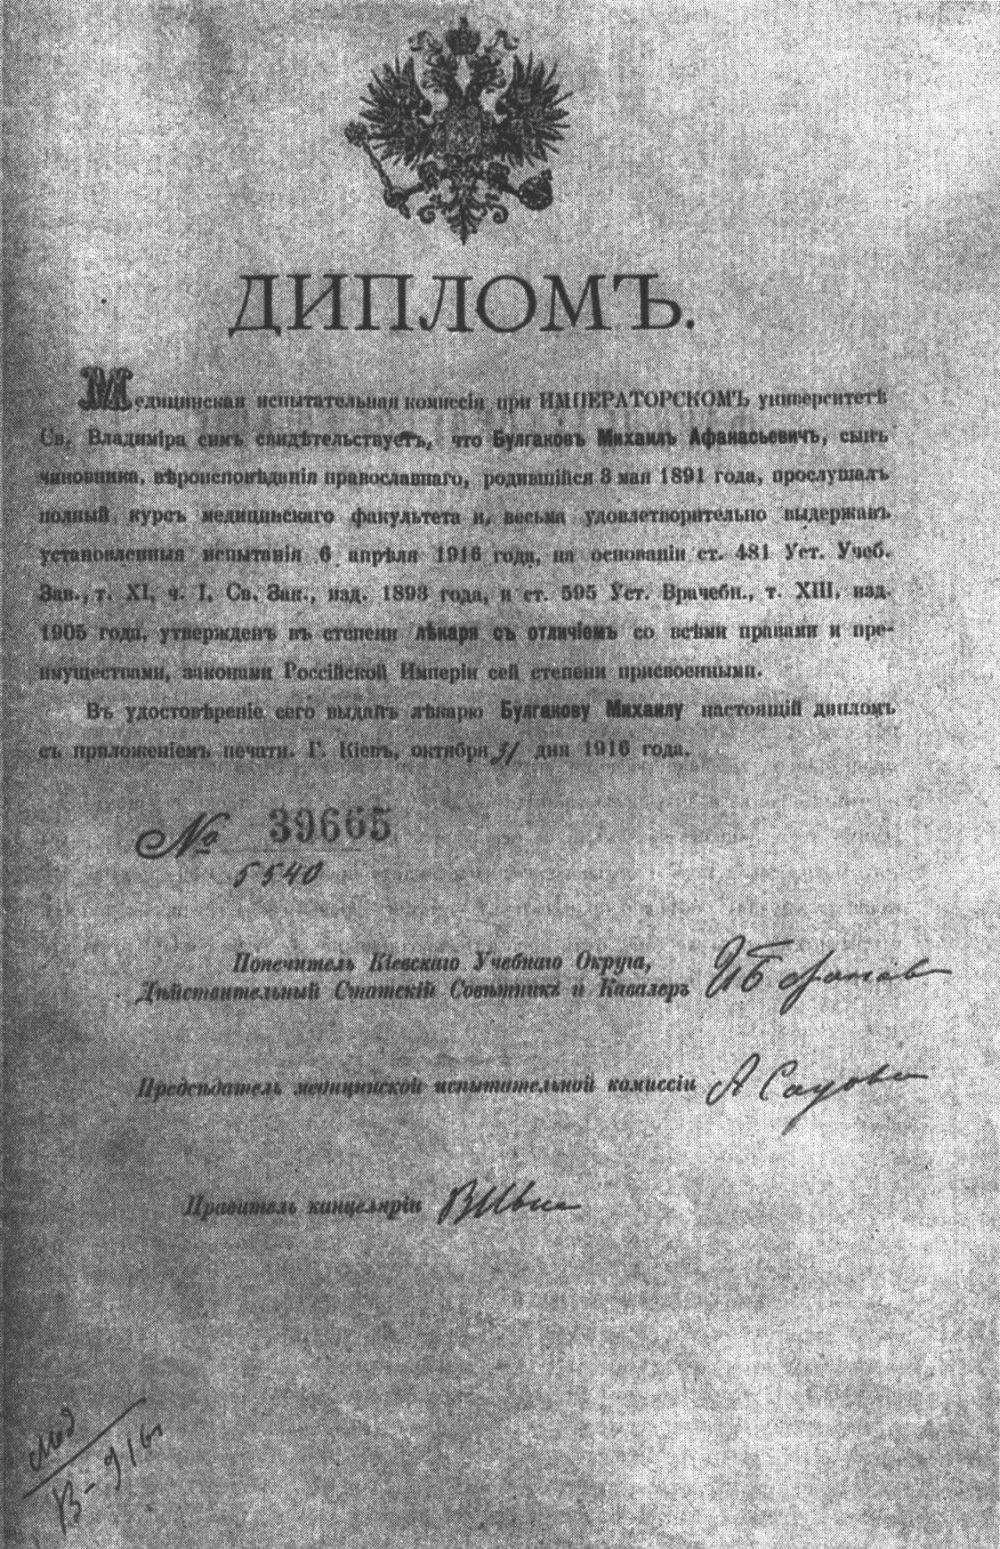 Диплом «лекаря с отличием» М.А. Булгакова. 31 октября 1916 г.